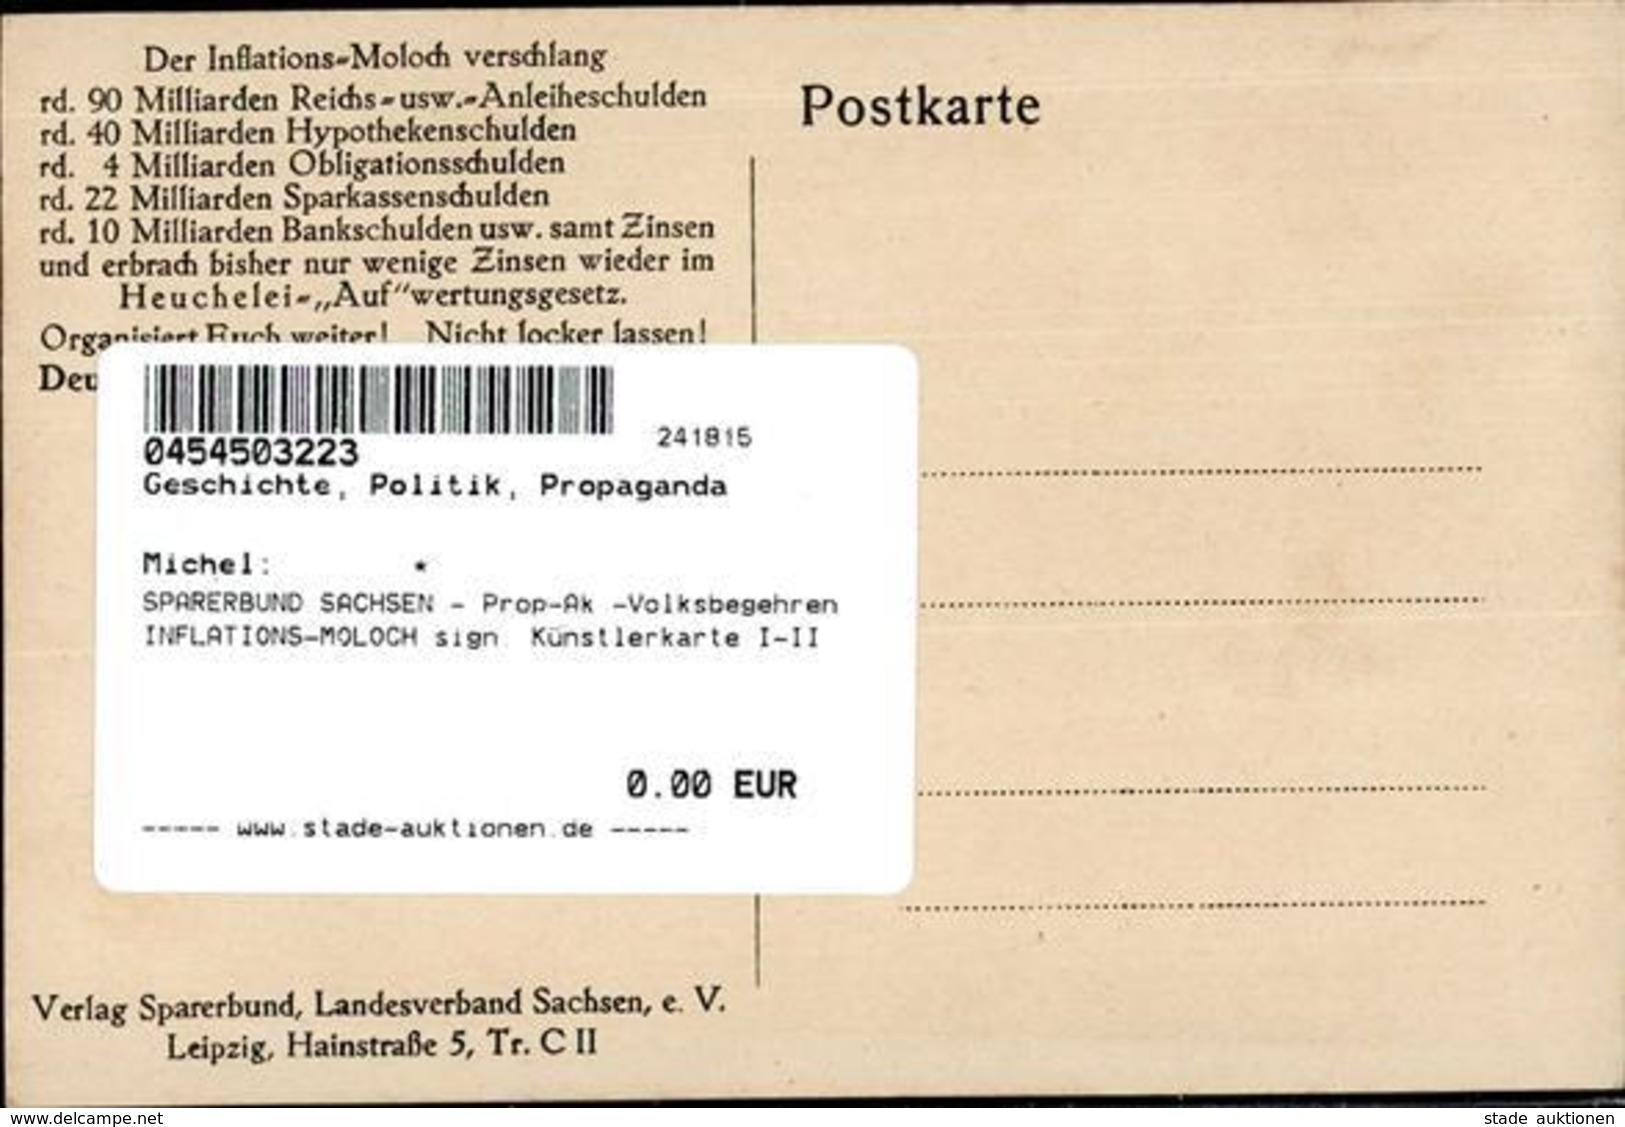 SPARERBUND SACHSEN - Prop-Ak -Volksbegehren INFLATIONS-MOLOCH Sign. Künstlerkarte I-II - Geschichte